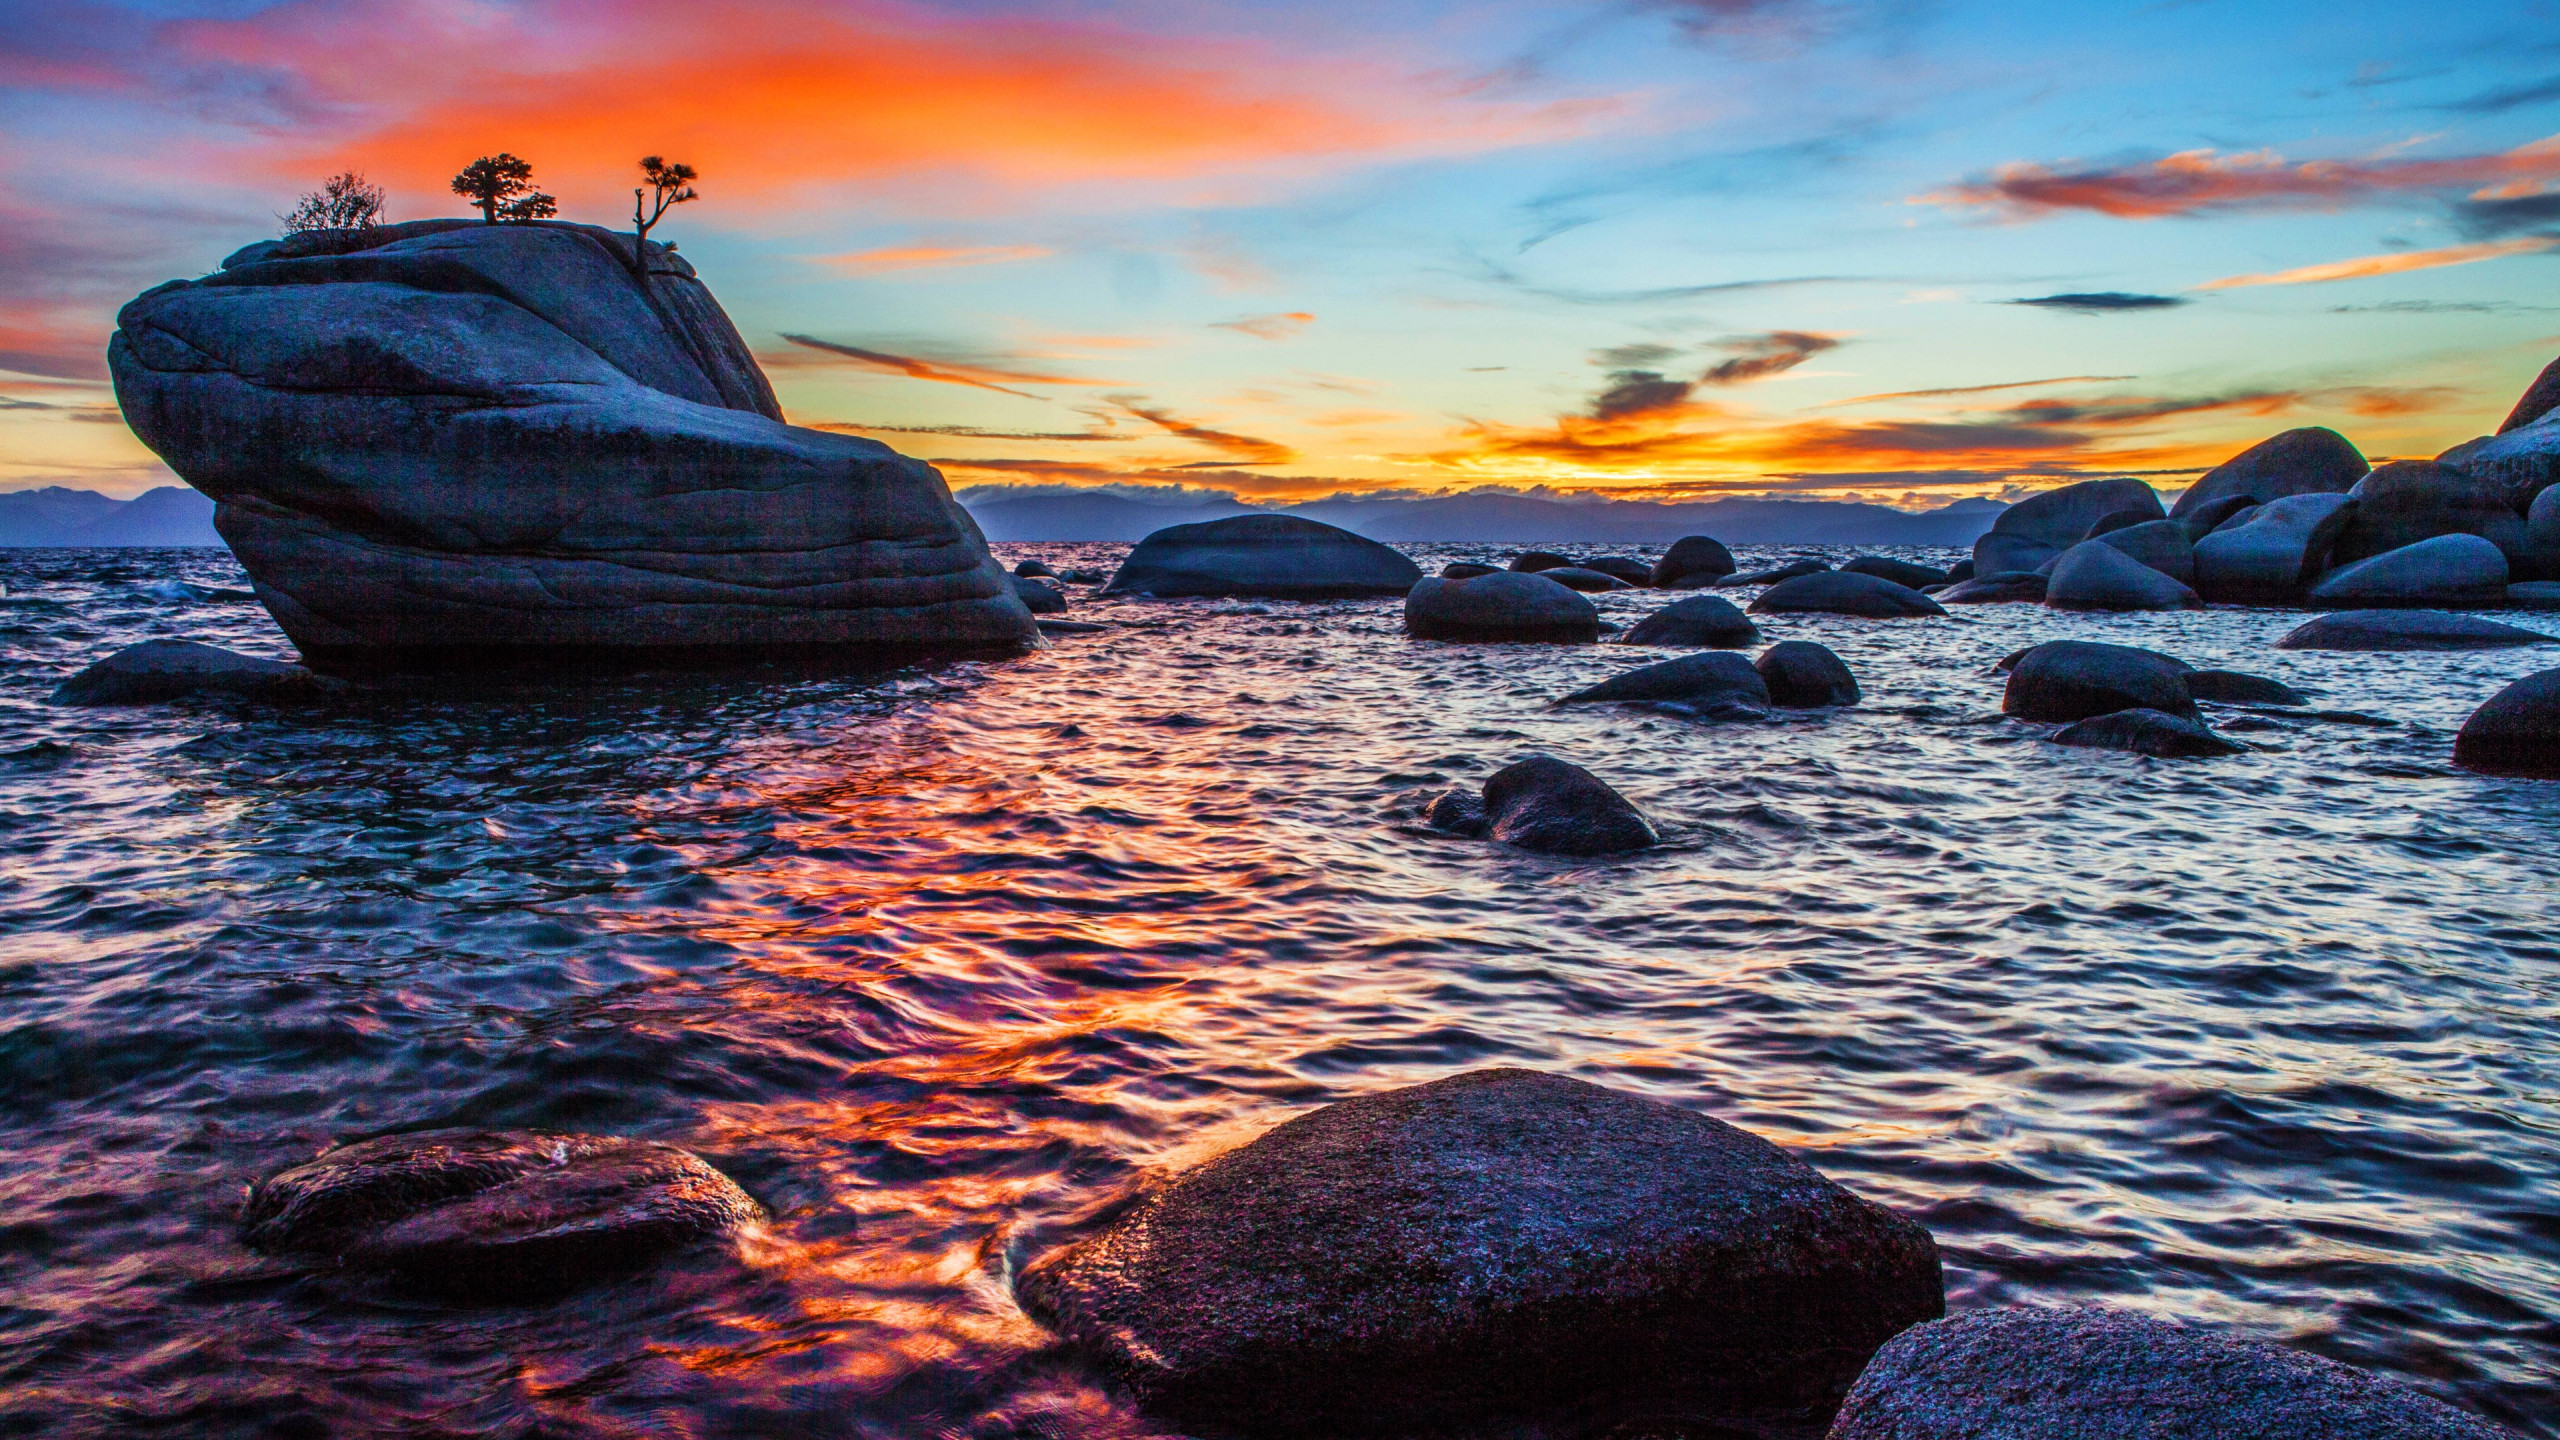 Bonsai Rock sunset at Lake Tahoe wallpaper 2560x1440